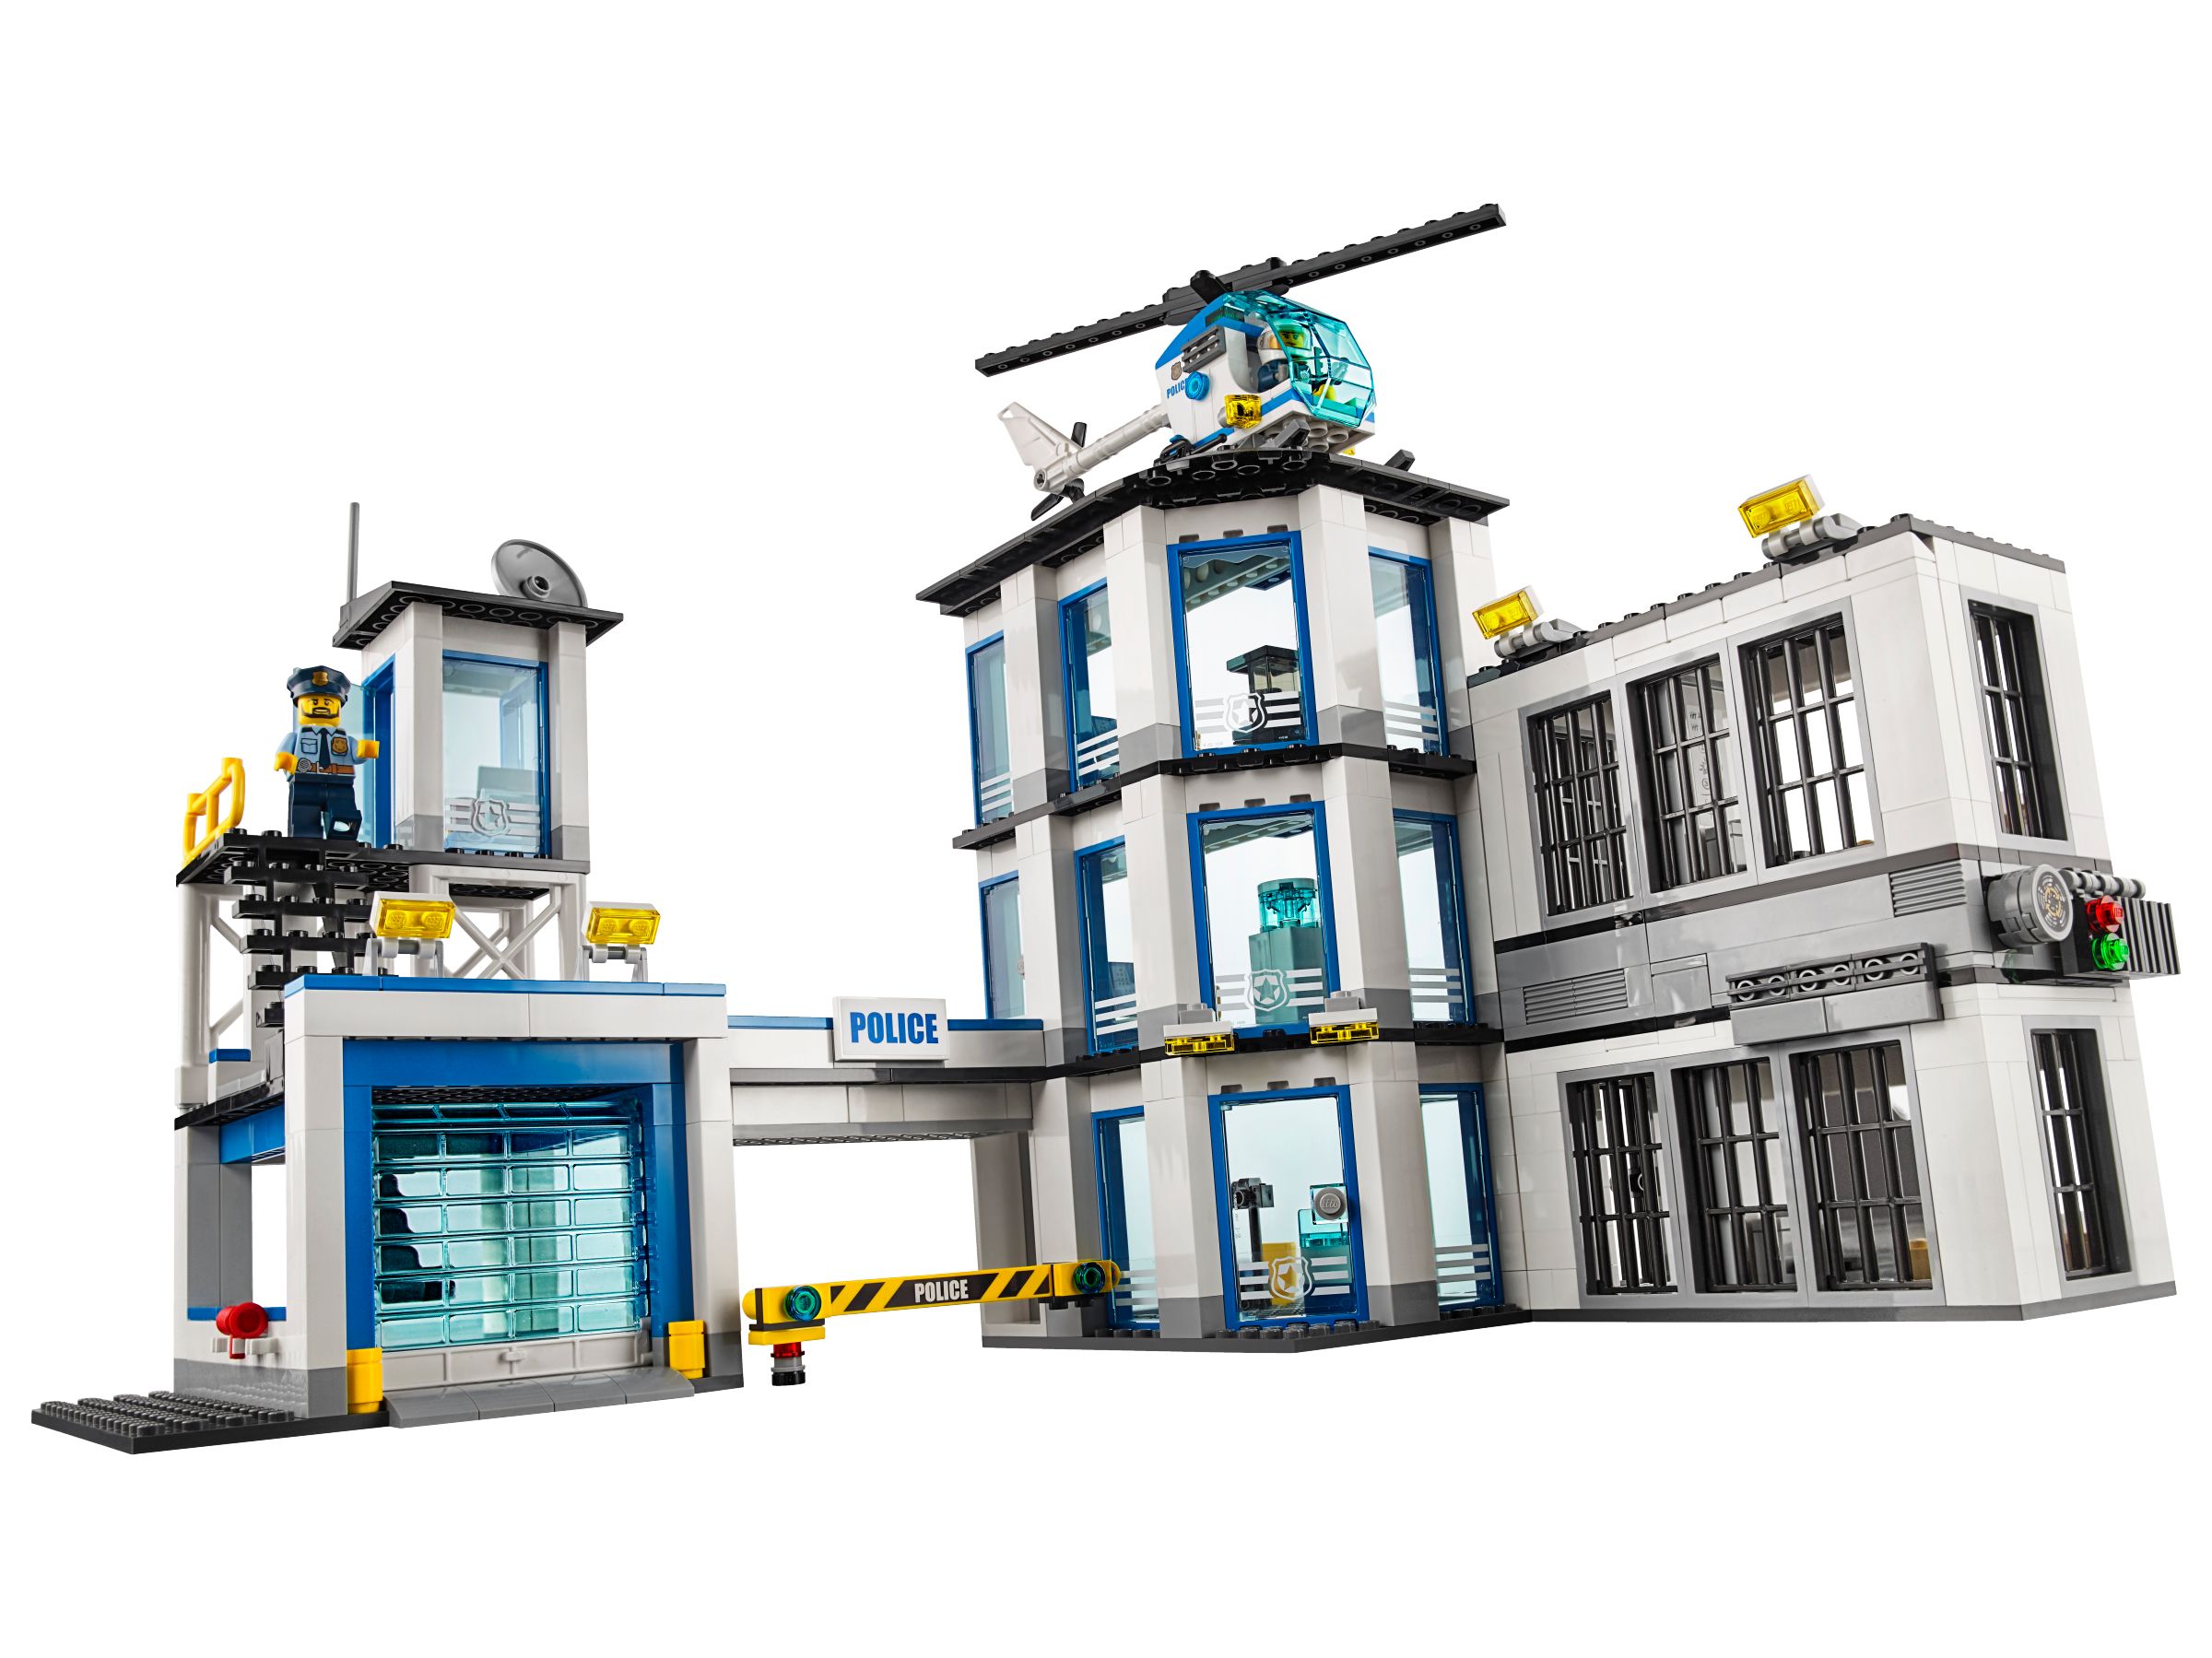 LEGO City 60141 Polizeiwache LEGO_60141_alt3.jpg